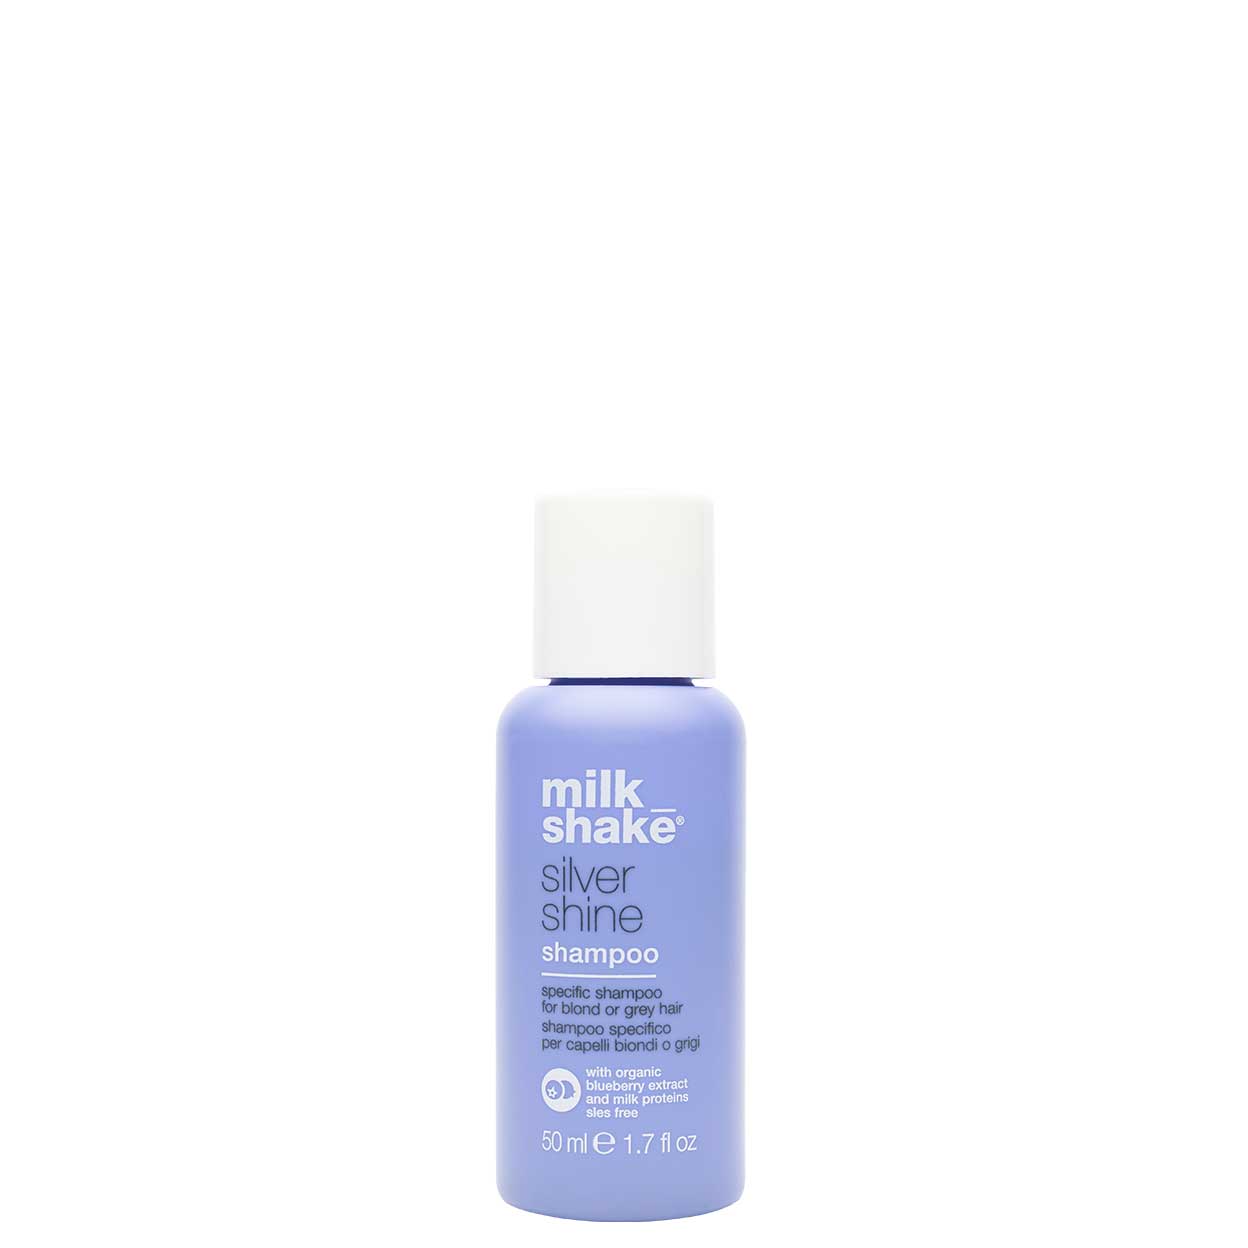 Fejde Ekstremt vigtigt Encyclopedia milk_shake silver shine shampoo – Milkshake Pro